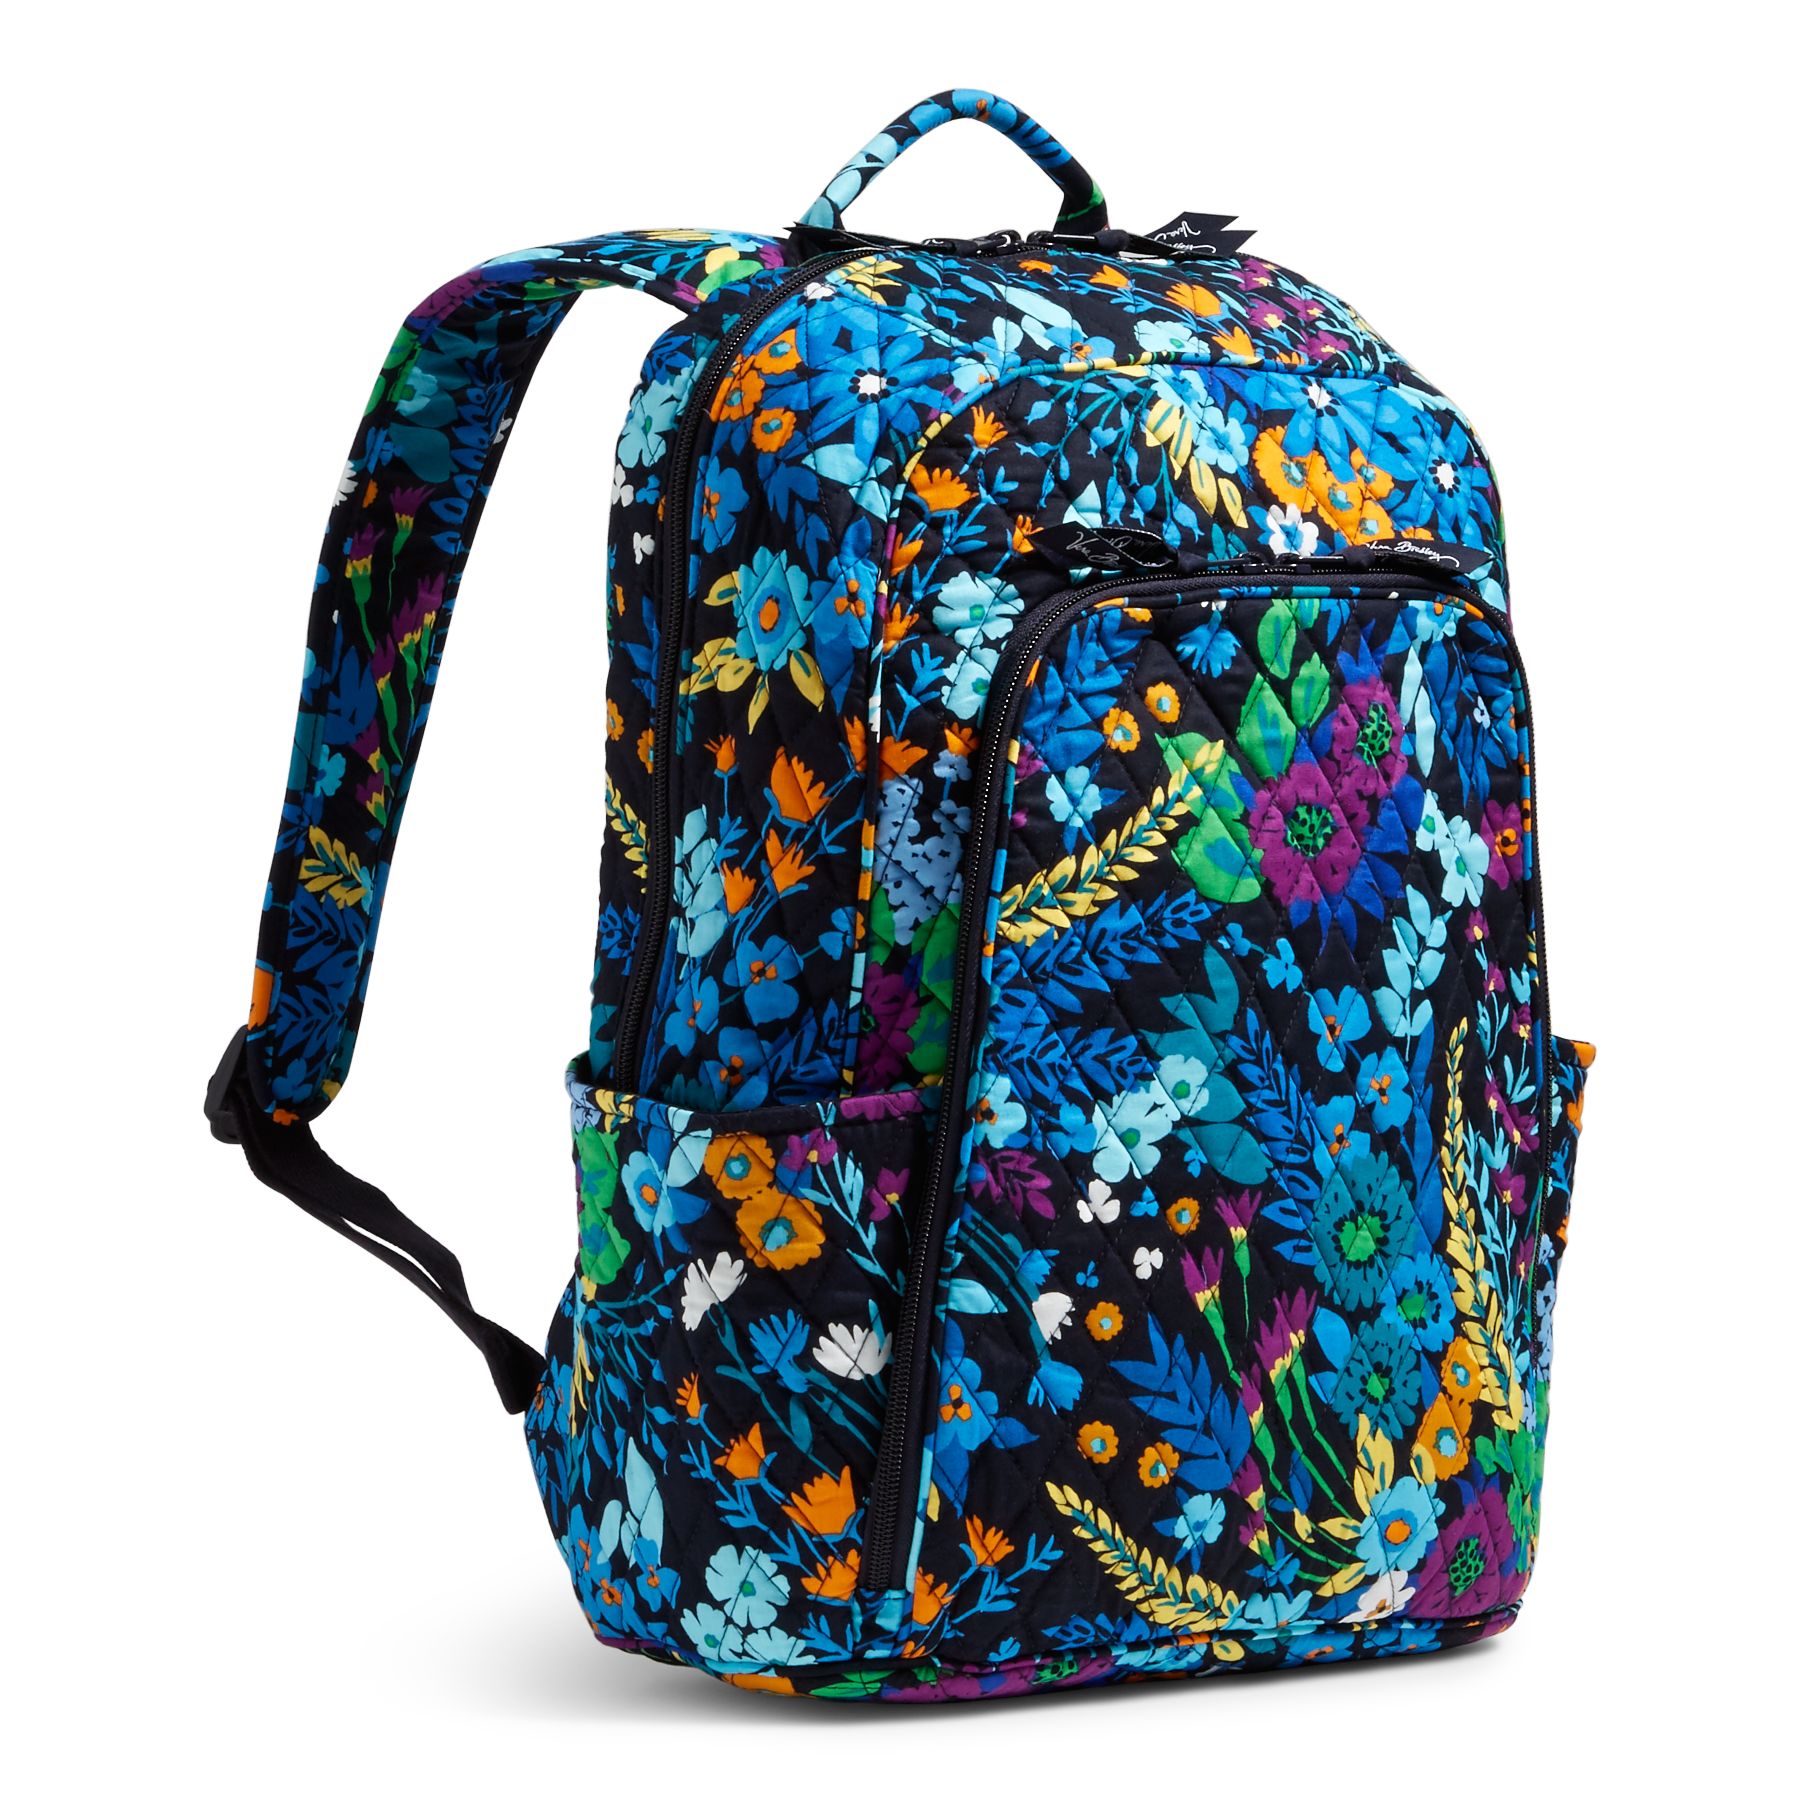 Vera Bradley Factory Exclusive Laptop Backpack Bag | eBay